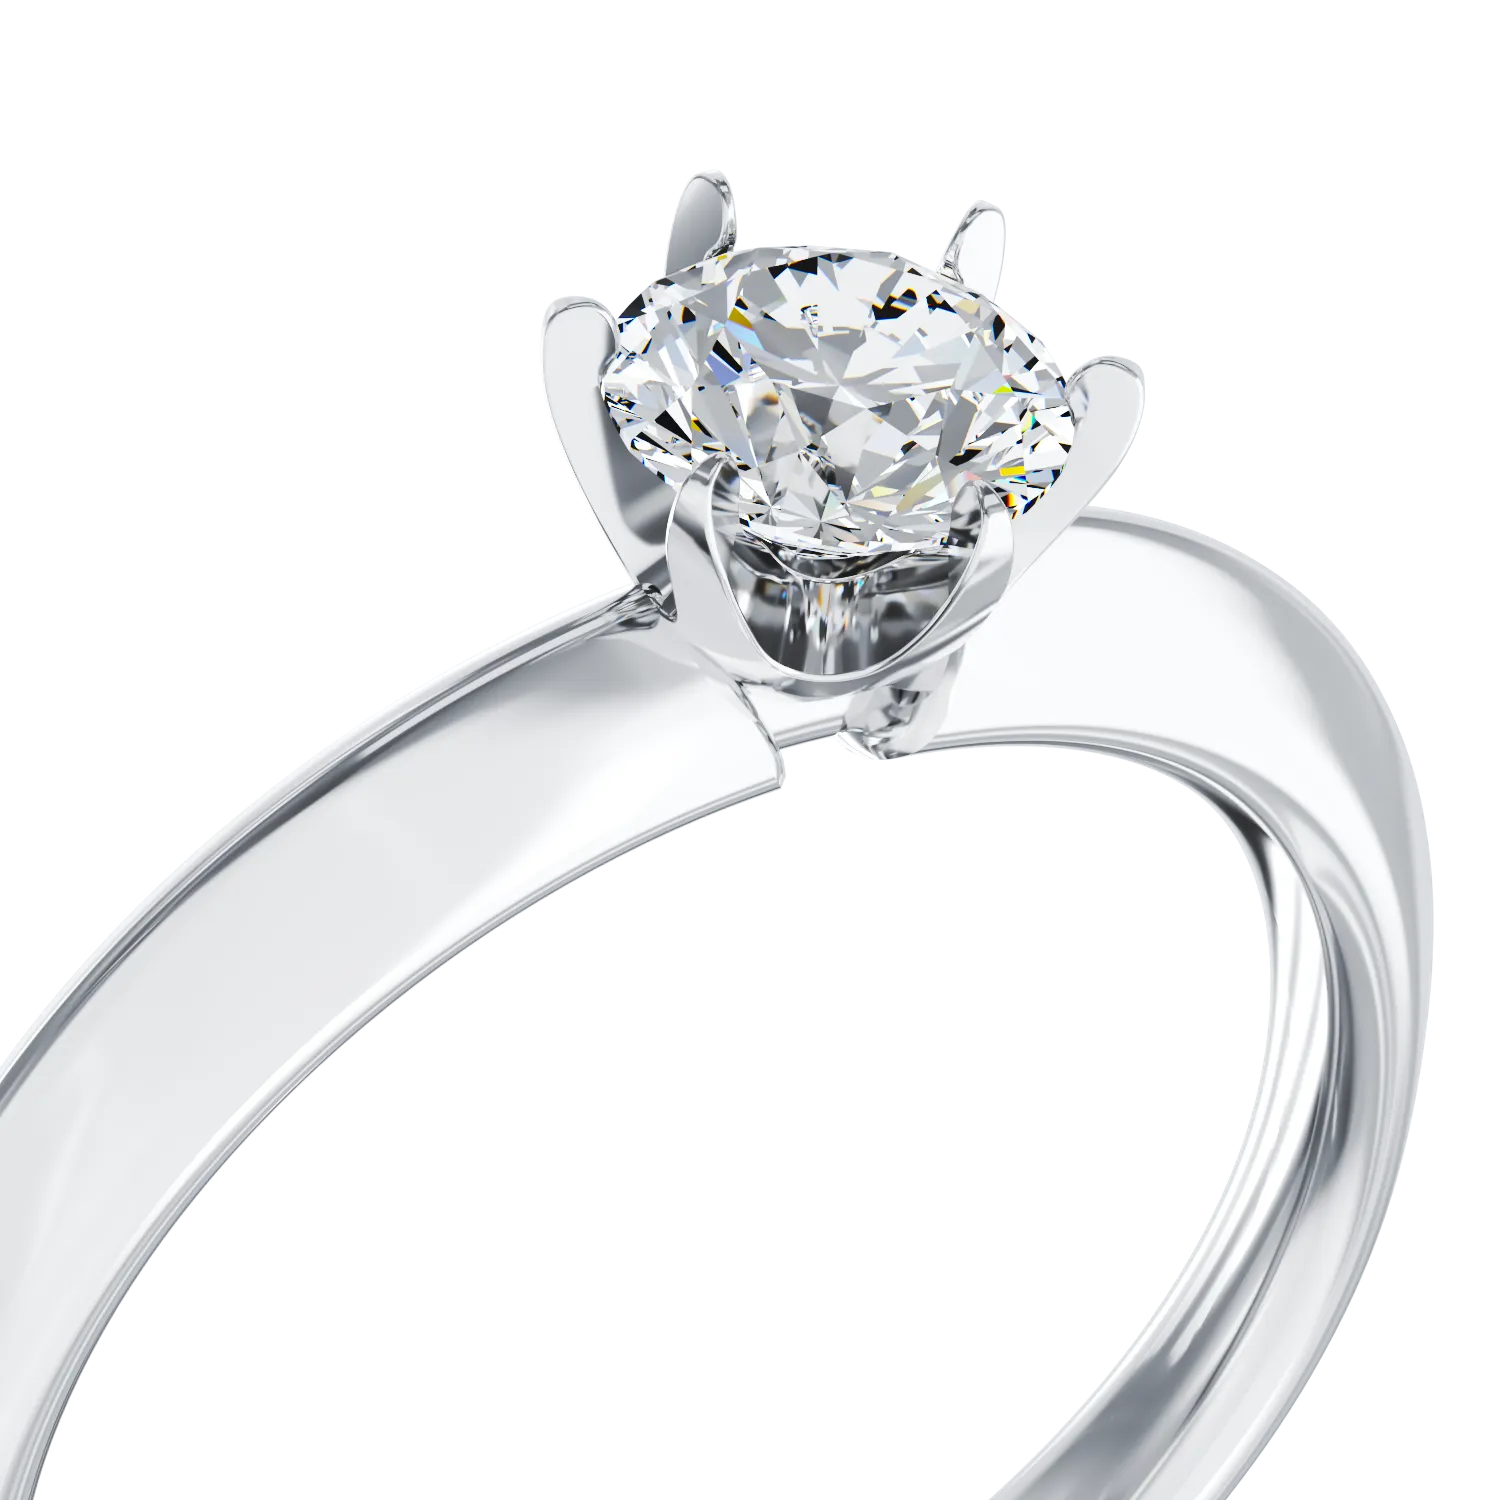 Годежен пръстен от бяло злато 18K с диамант 0.4ct